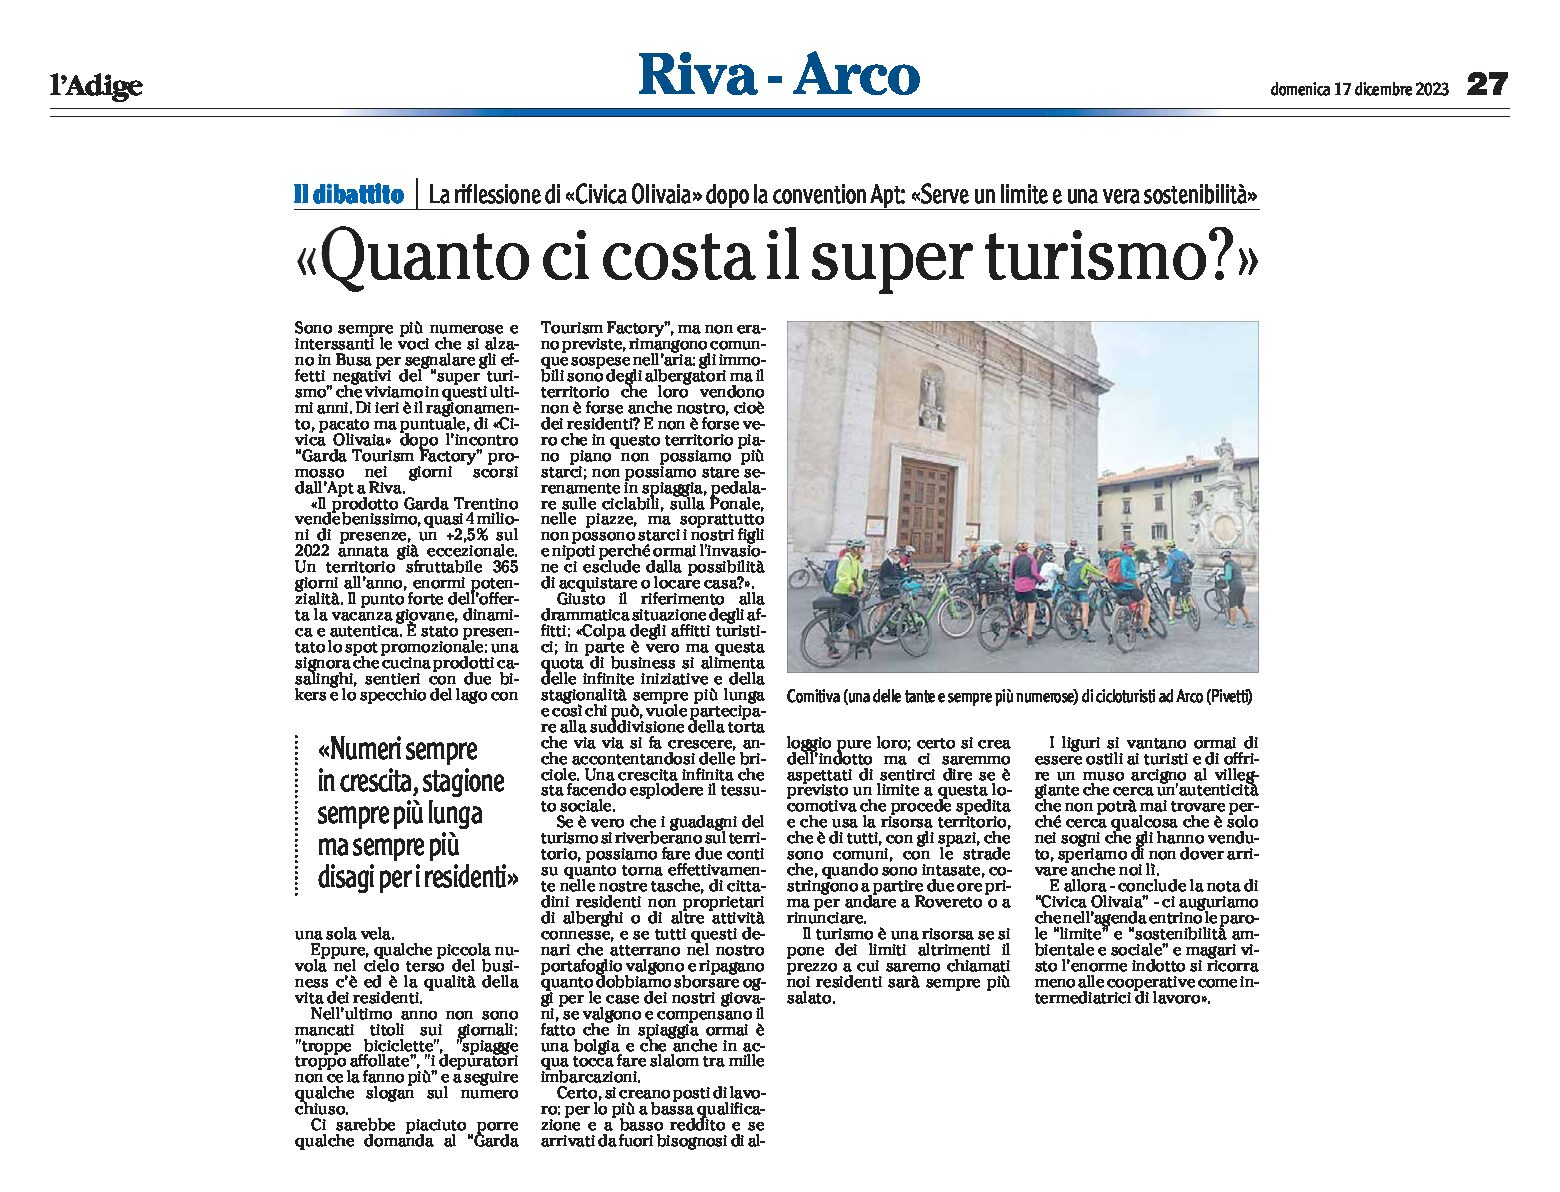 Lago di Garda: il dibattito “quanto ci costa il super turismo”?